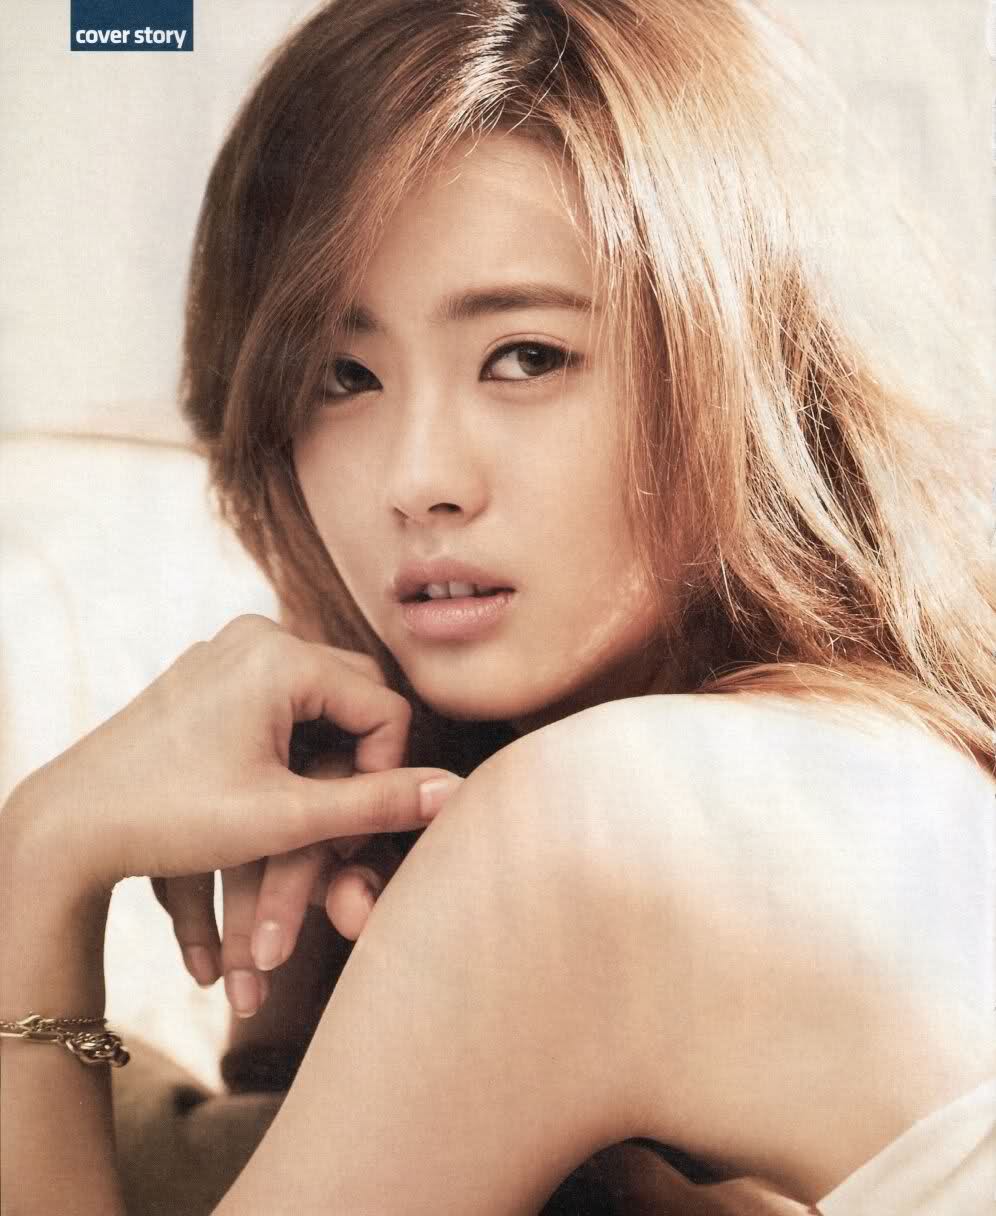 Bintang Korea Masuk 100 Wanita Paling Cantik 2011 KapanLagicom